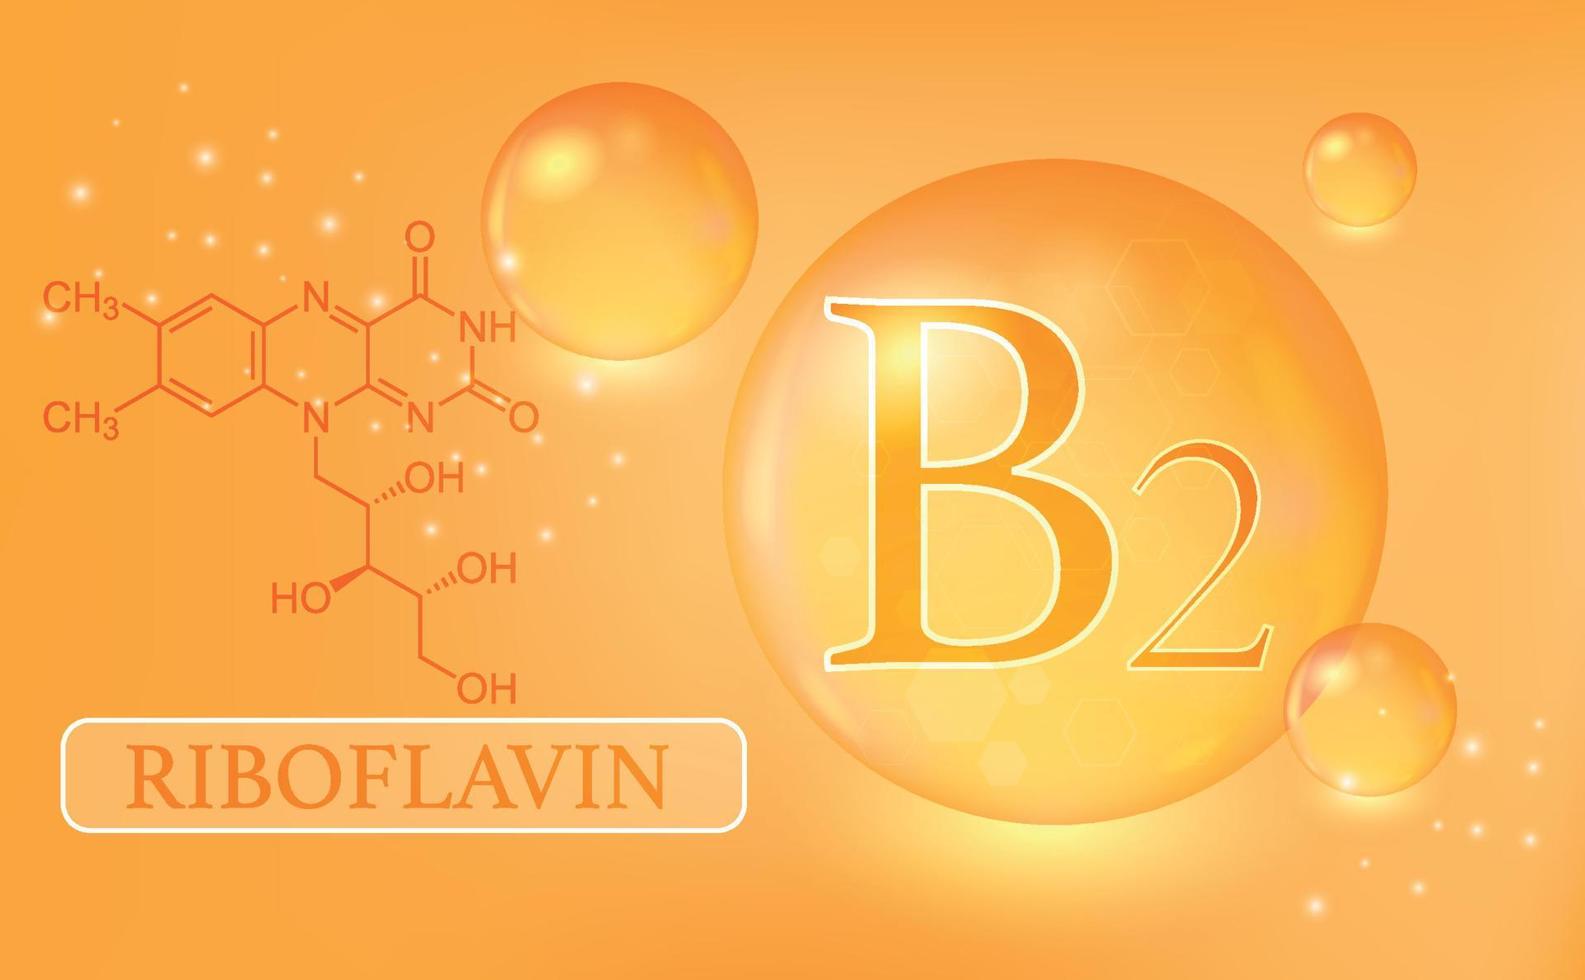 vitamine b2, riboflavine, gouttes d'eau, capsule sur fond orange. complexe de vitamines avec formule chimique. affiche médicale d'information. illustration vectorielle vecteur